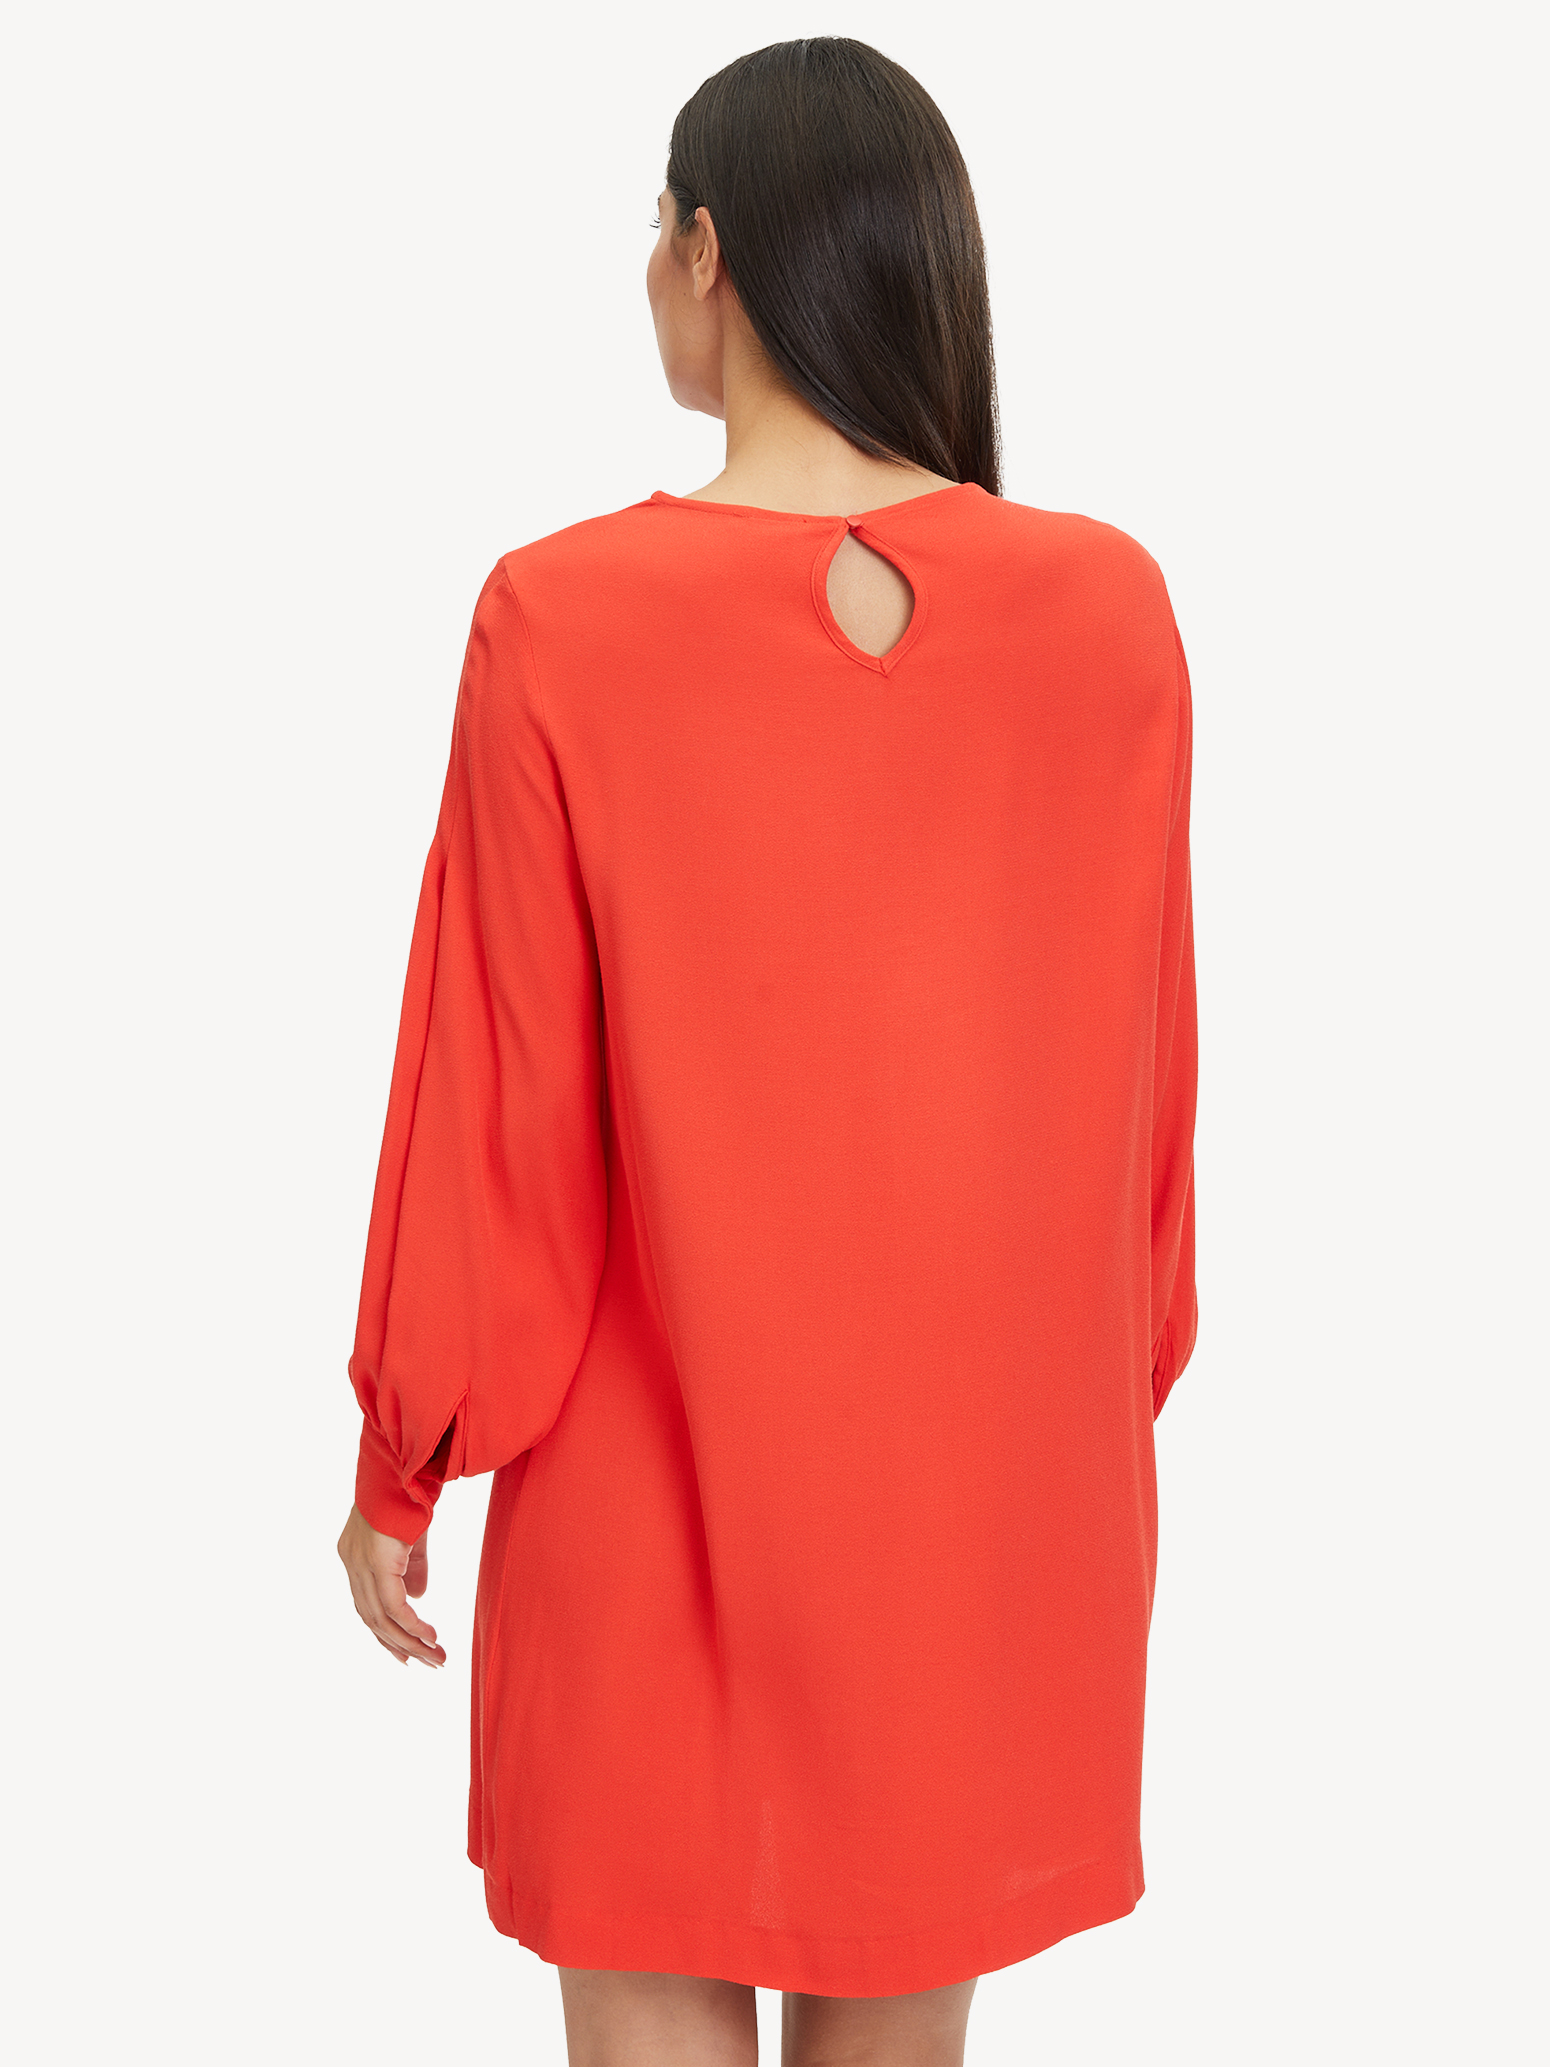 Kleid - rot TAW0356-30042: Tamaris Kleider online kaufen!